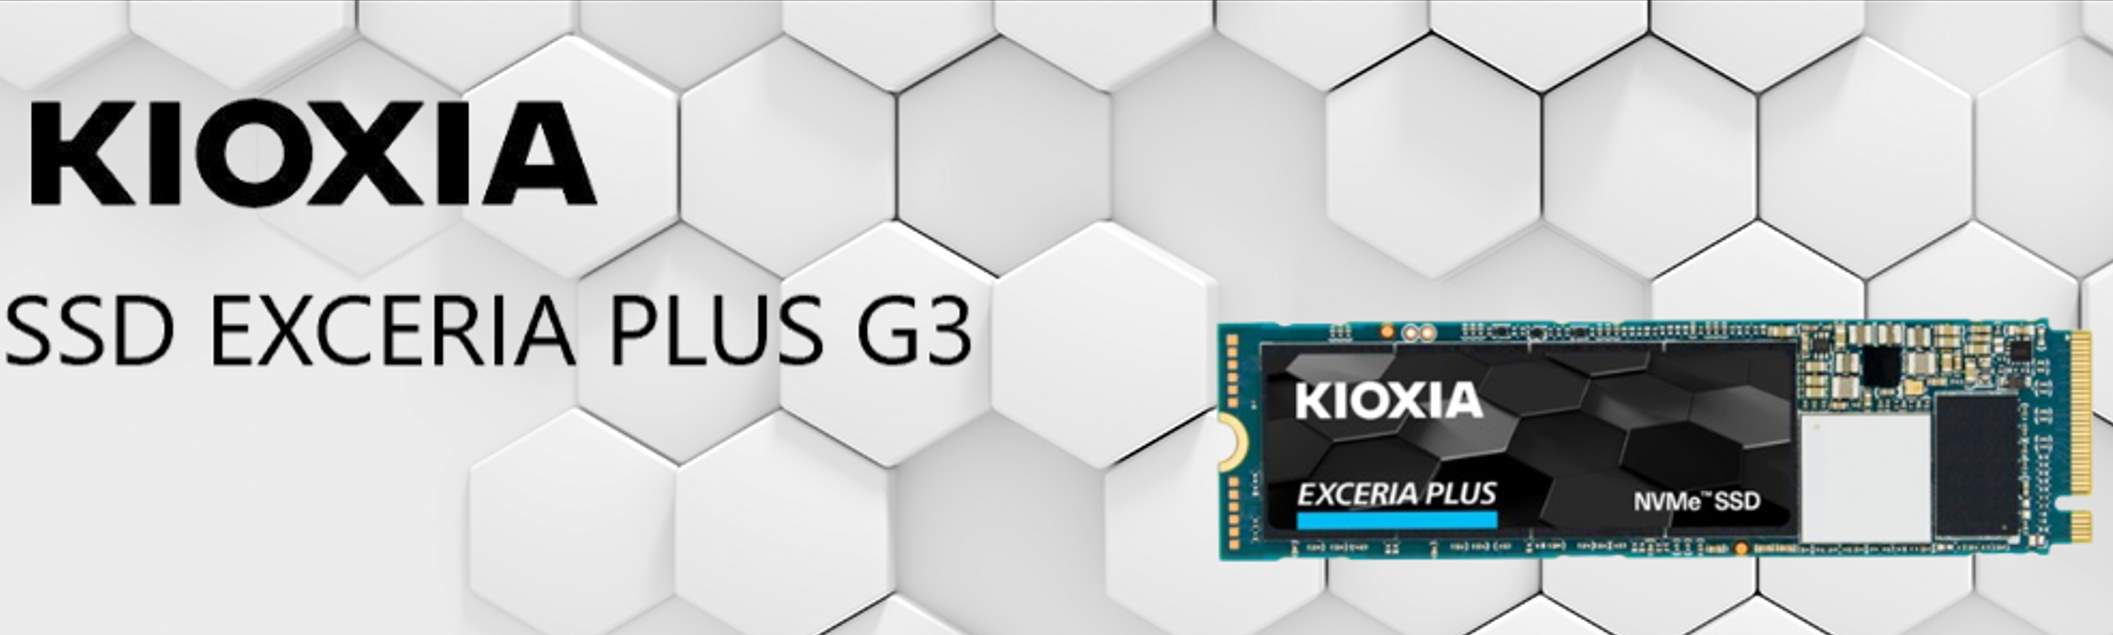 Kioxia SSD Exceria Plus G3 Recensione